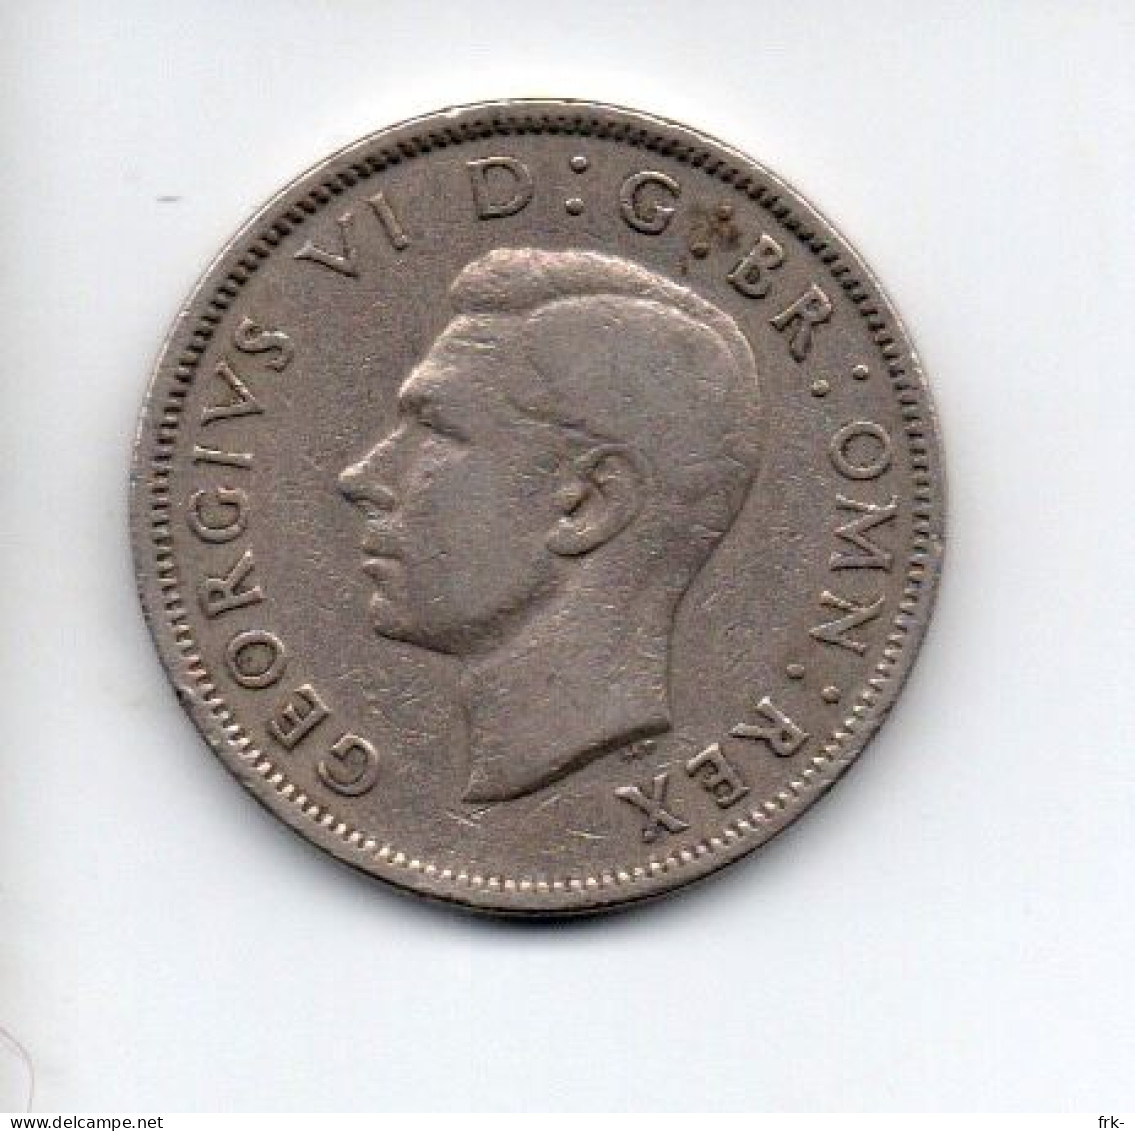 GRAN BRETAGNA 2 SHILLING 1951 - J. 1 Florin / 2 Shillings